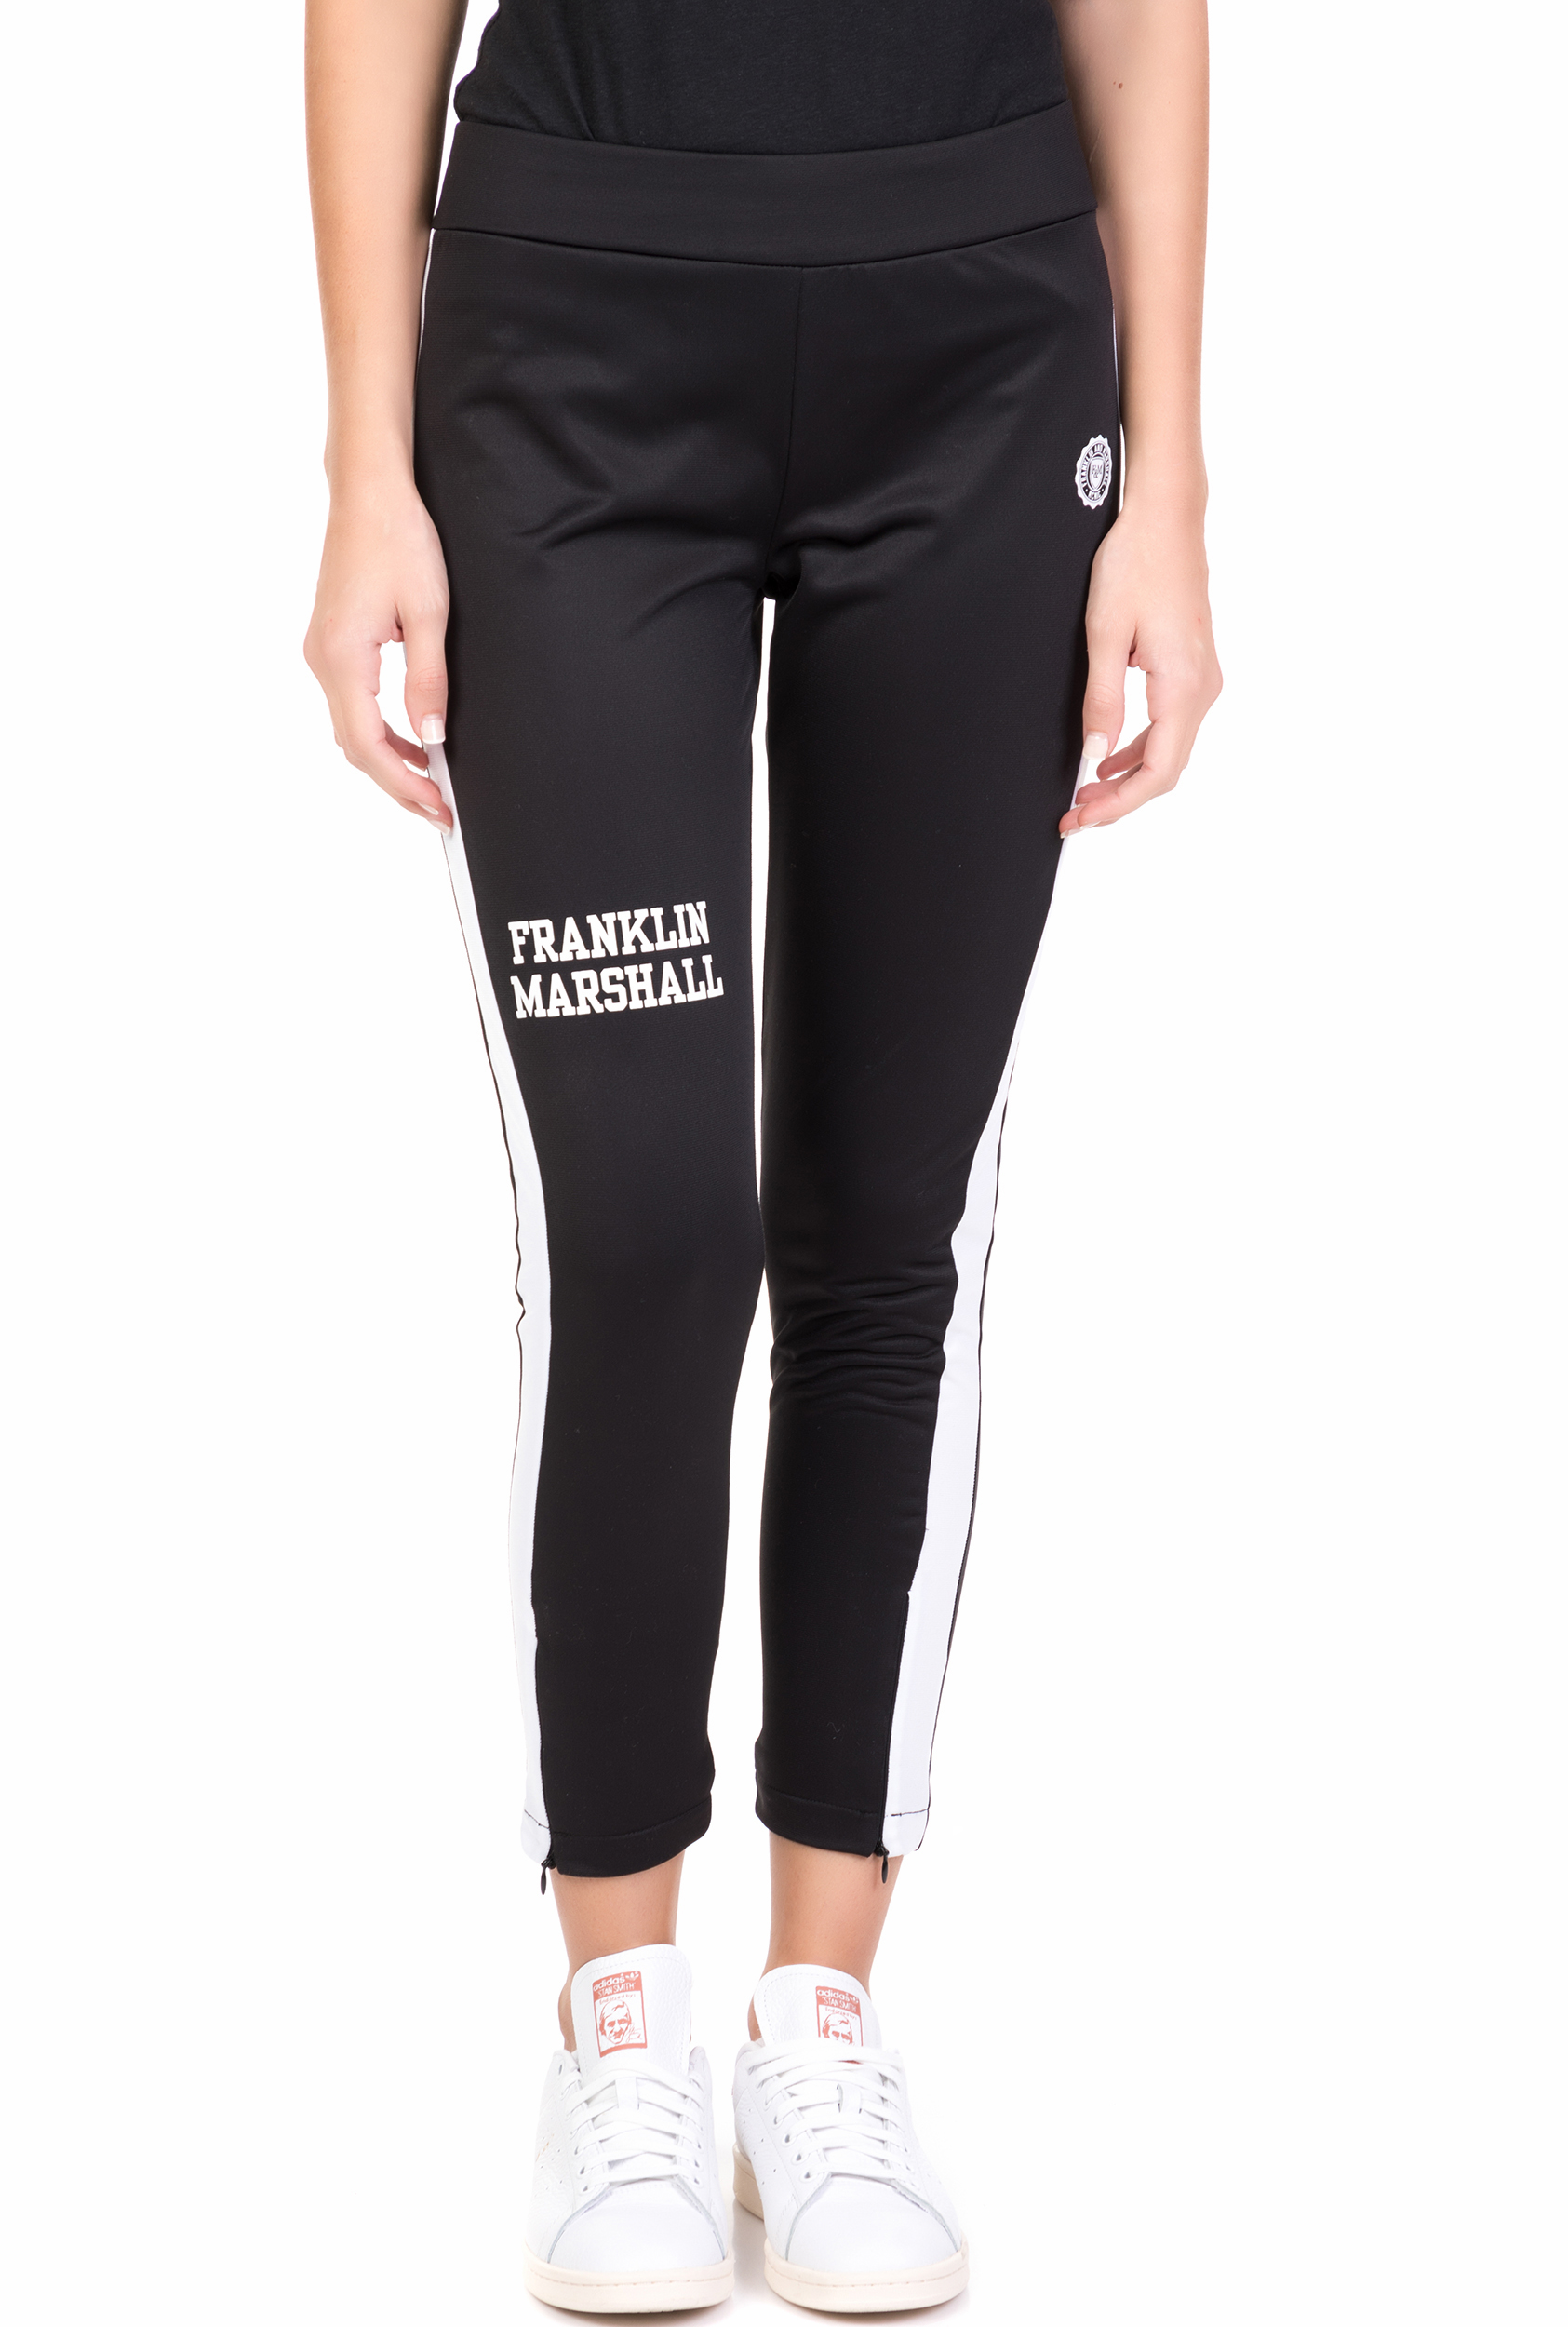 Γυναικεία/Ρούχα/Αθλητικά/Φόρμες FRANKLIN & MARSHALL - Γυναικείο παντελόνι φόρμας FRANKLIN & MARSHALL μαύρο